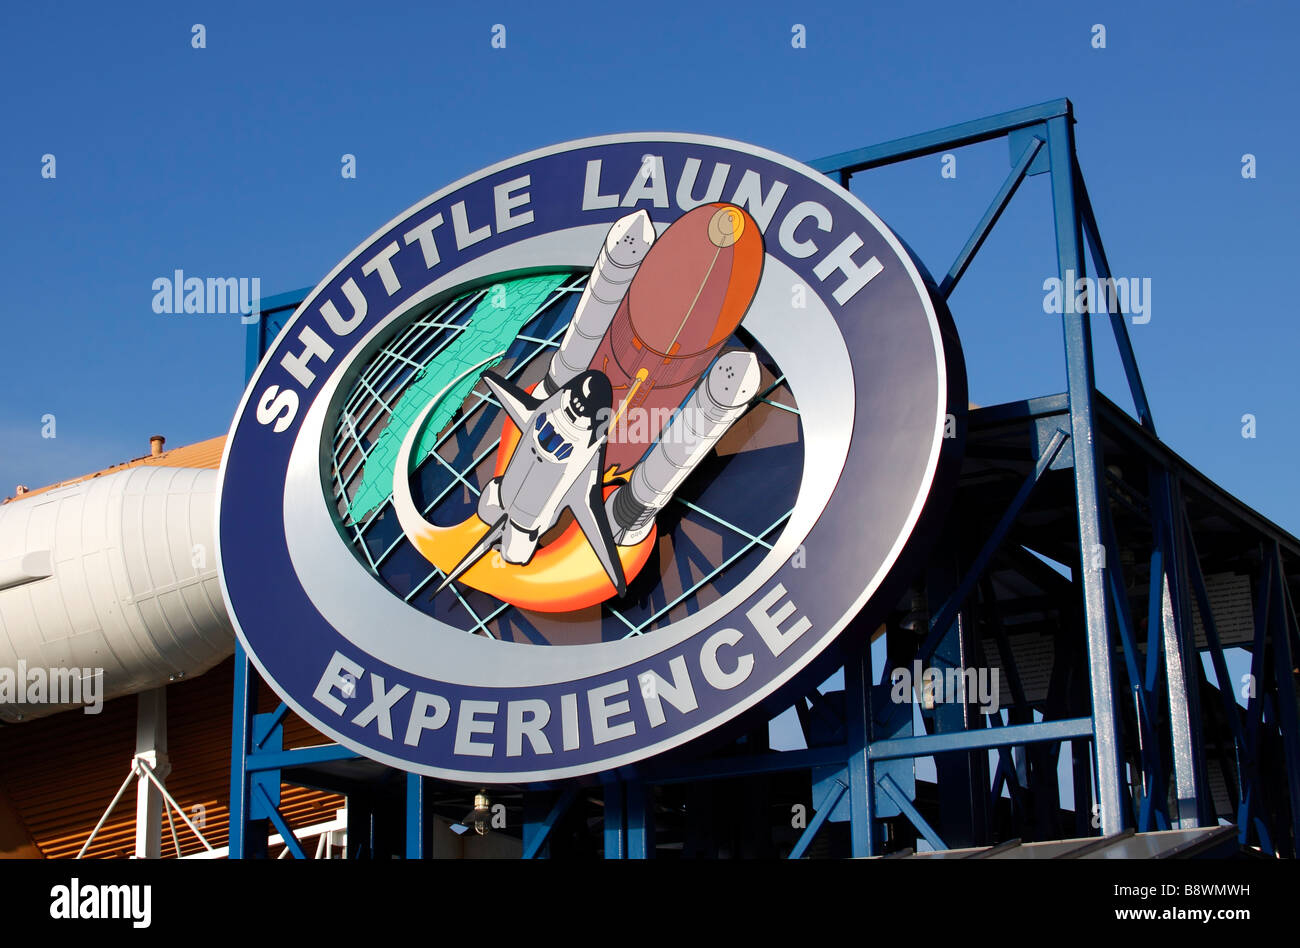 La navetta esperienza di lancio, una navetta spaziale sollevare il simulatore di guida, dal Kennedy Space Center di Cape Canaveral, in Florida, Stati Uniti d'America Foto Stock